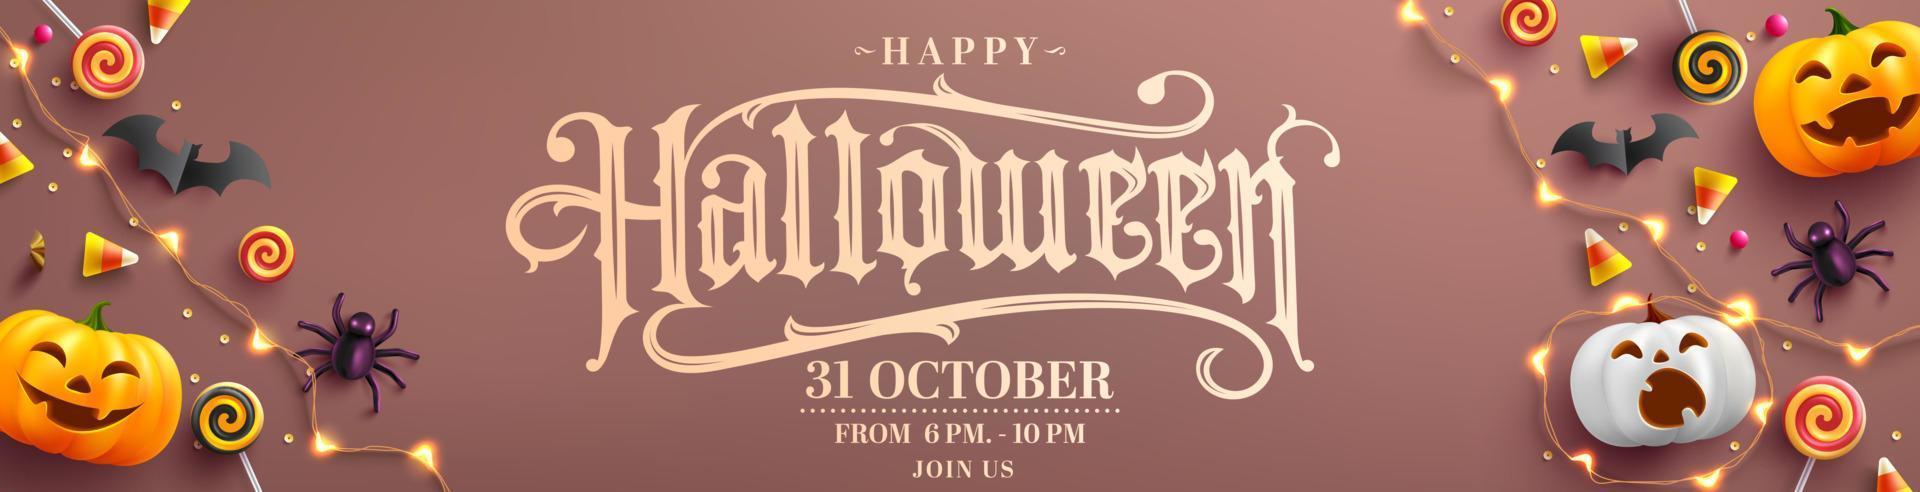 cartaz de festa de halloween feliz ou banner com abóbora fantasma, morcego, doces e elementos de halloween site assustador, plano de fundo ou banner modelo de halloween ilustração vetorial eps 10 vetor